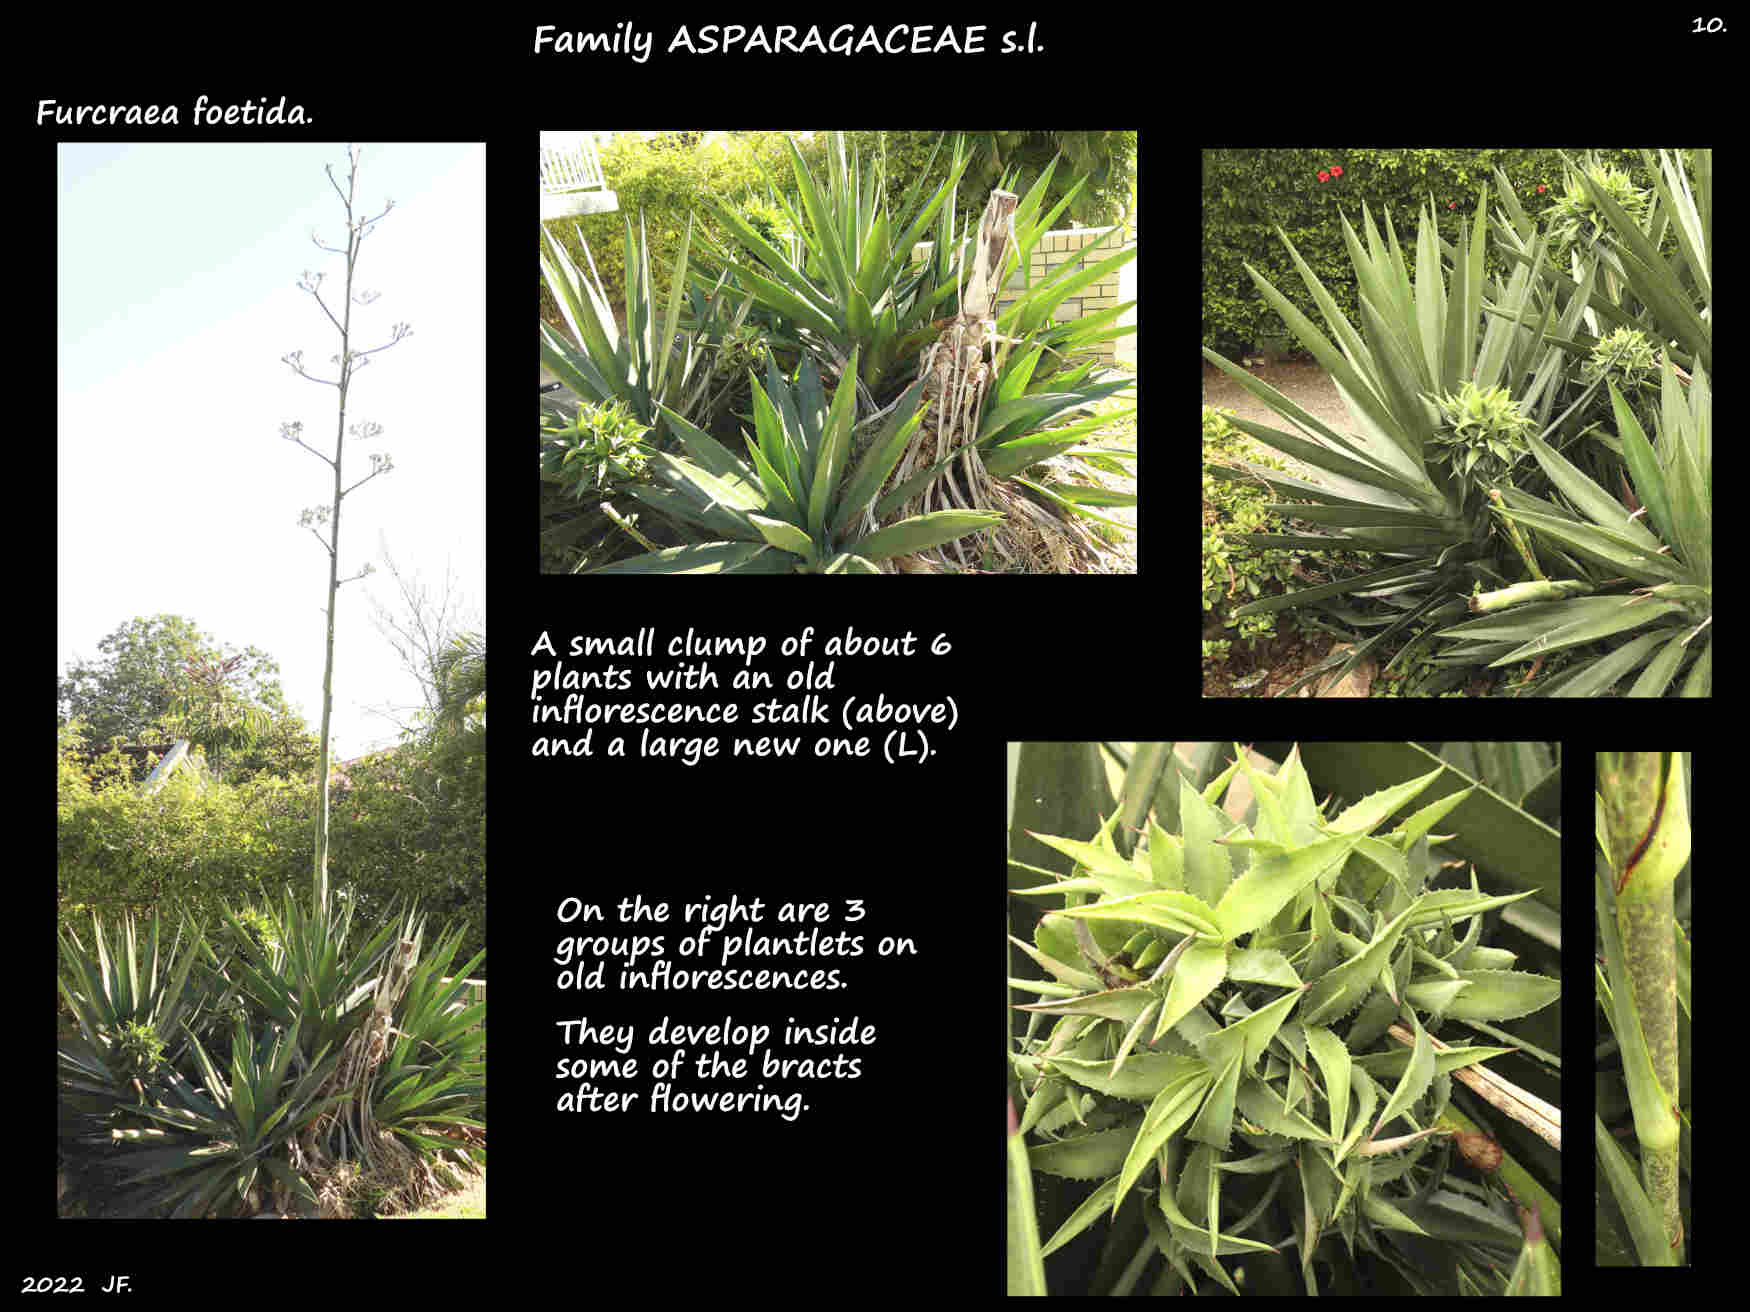 10 Furcraea foetida plantlets